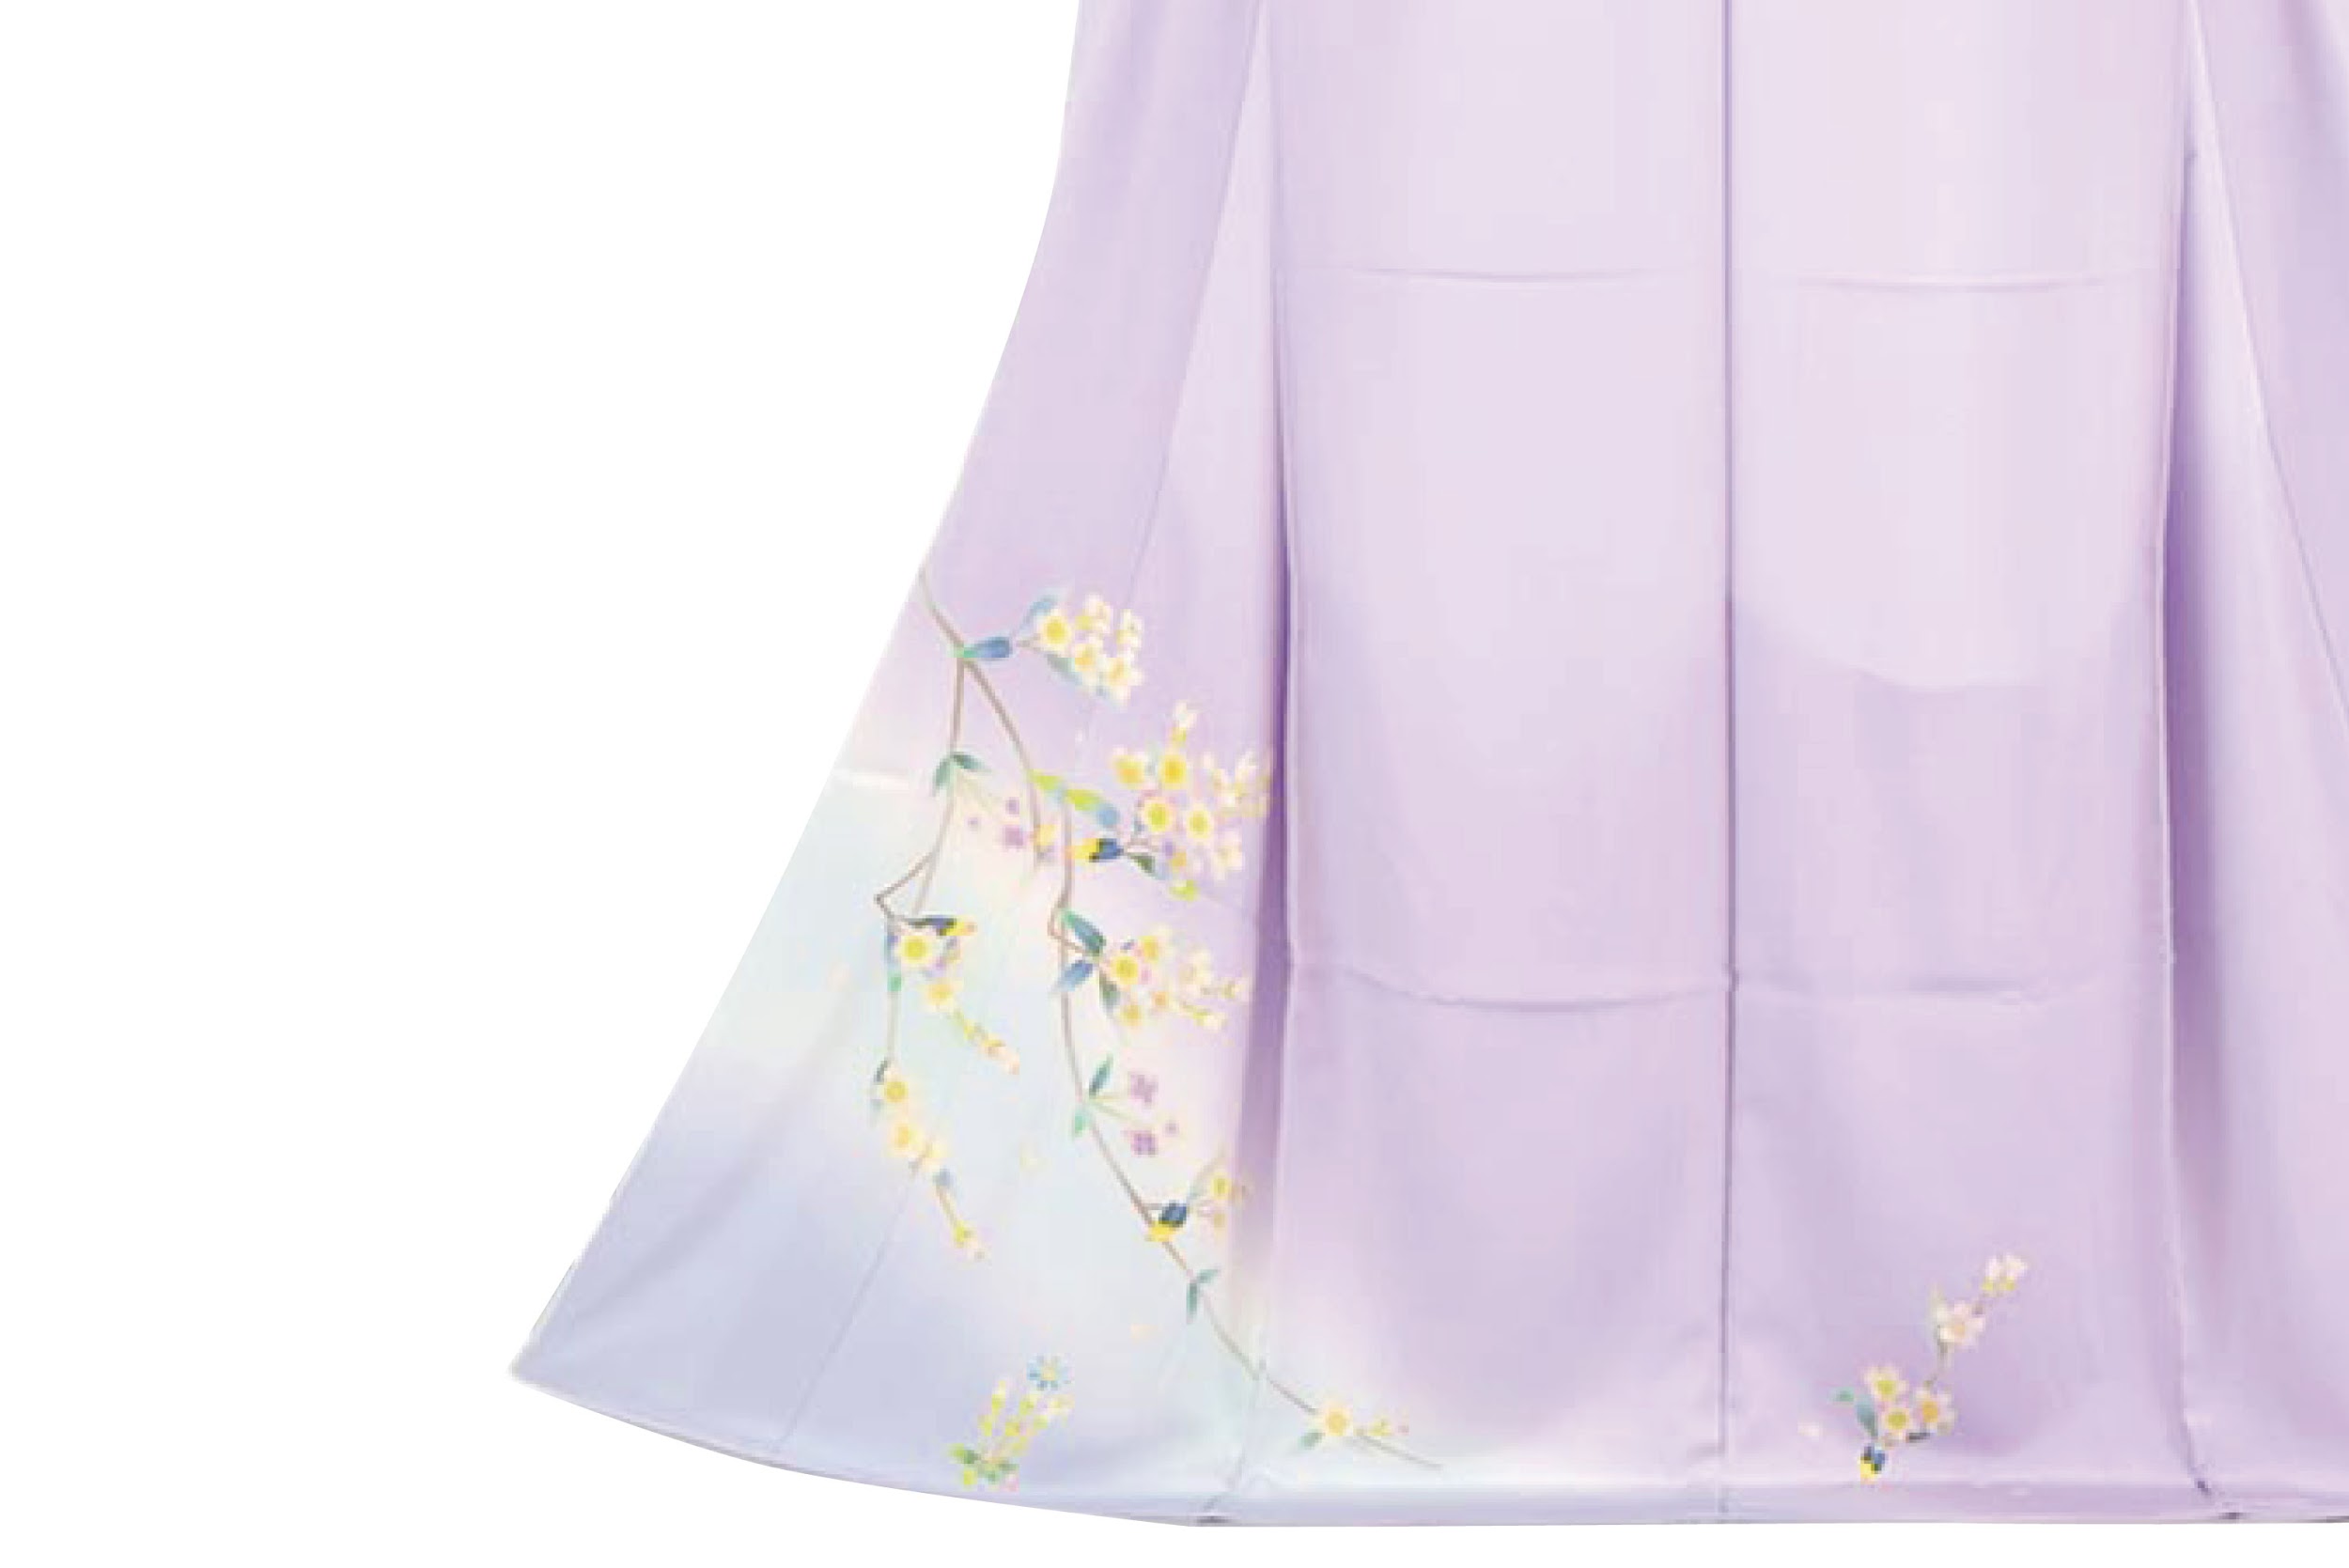 着物で広がる彩りの世界 紫 色の印象 コーディネートを学ぶ コラム きものと 着物メディア きものが紡ぐ豊かな物語 京都きもの市場